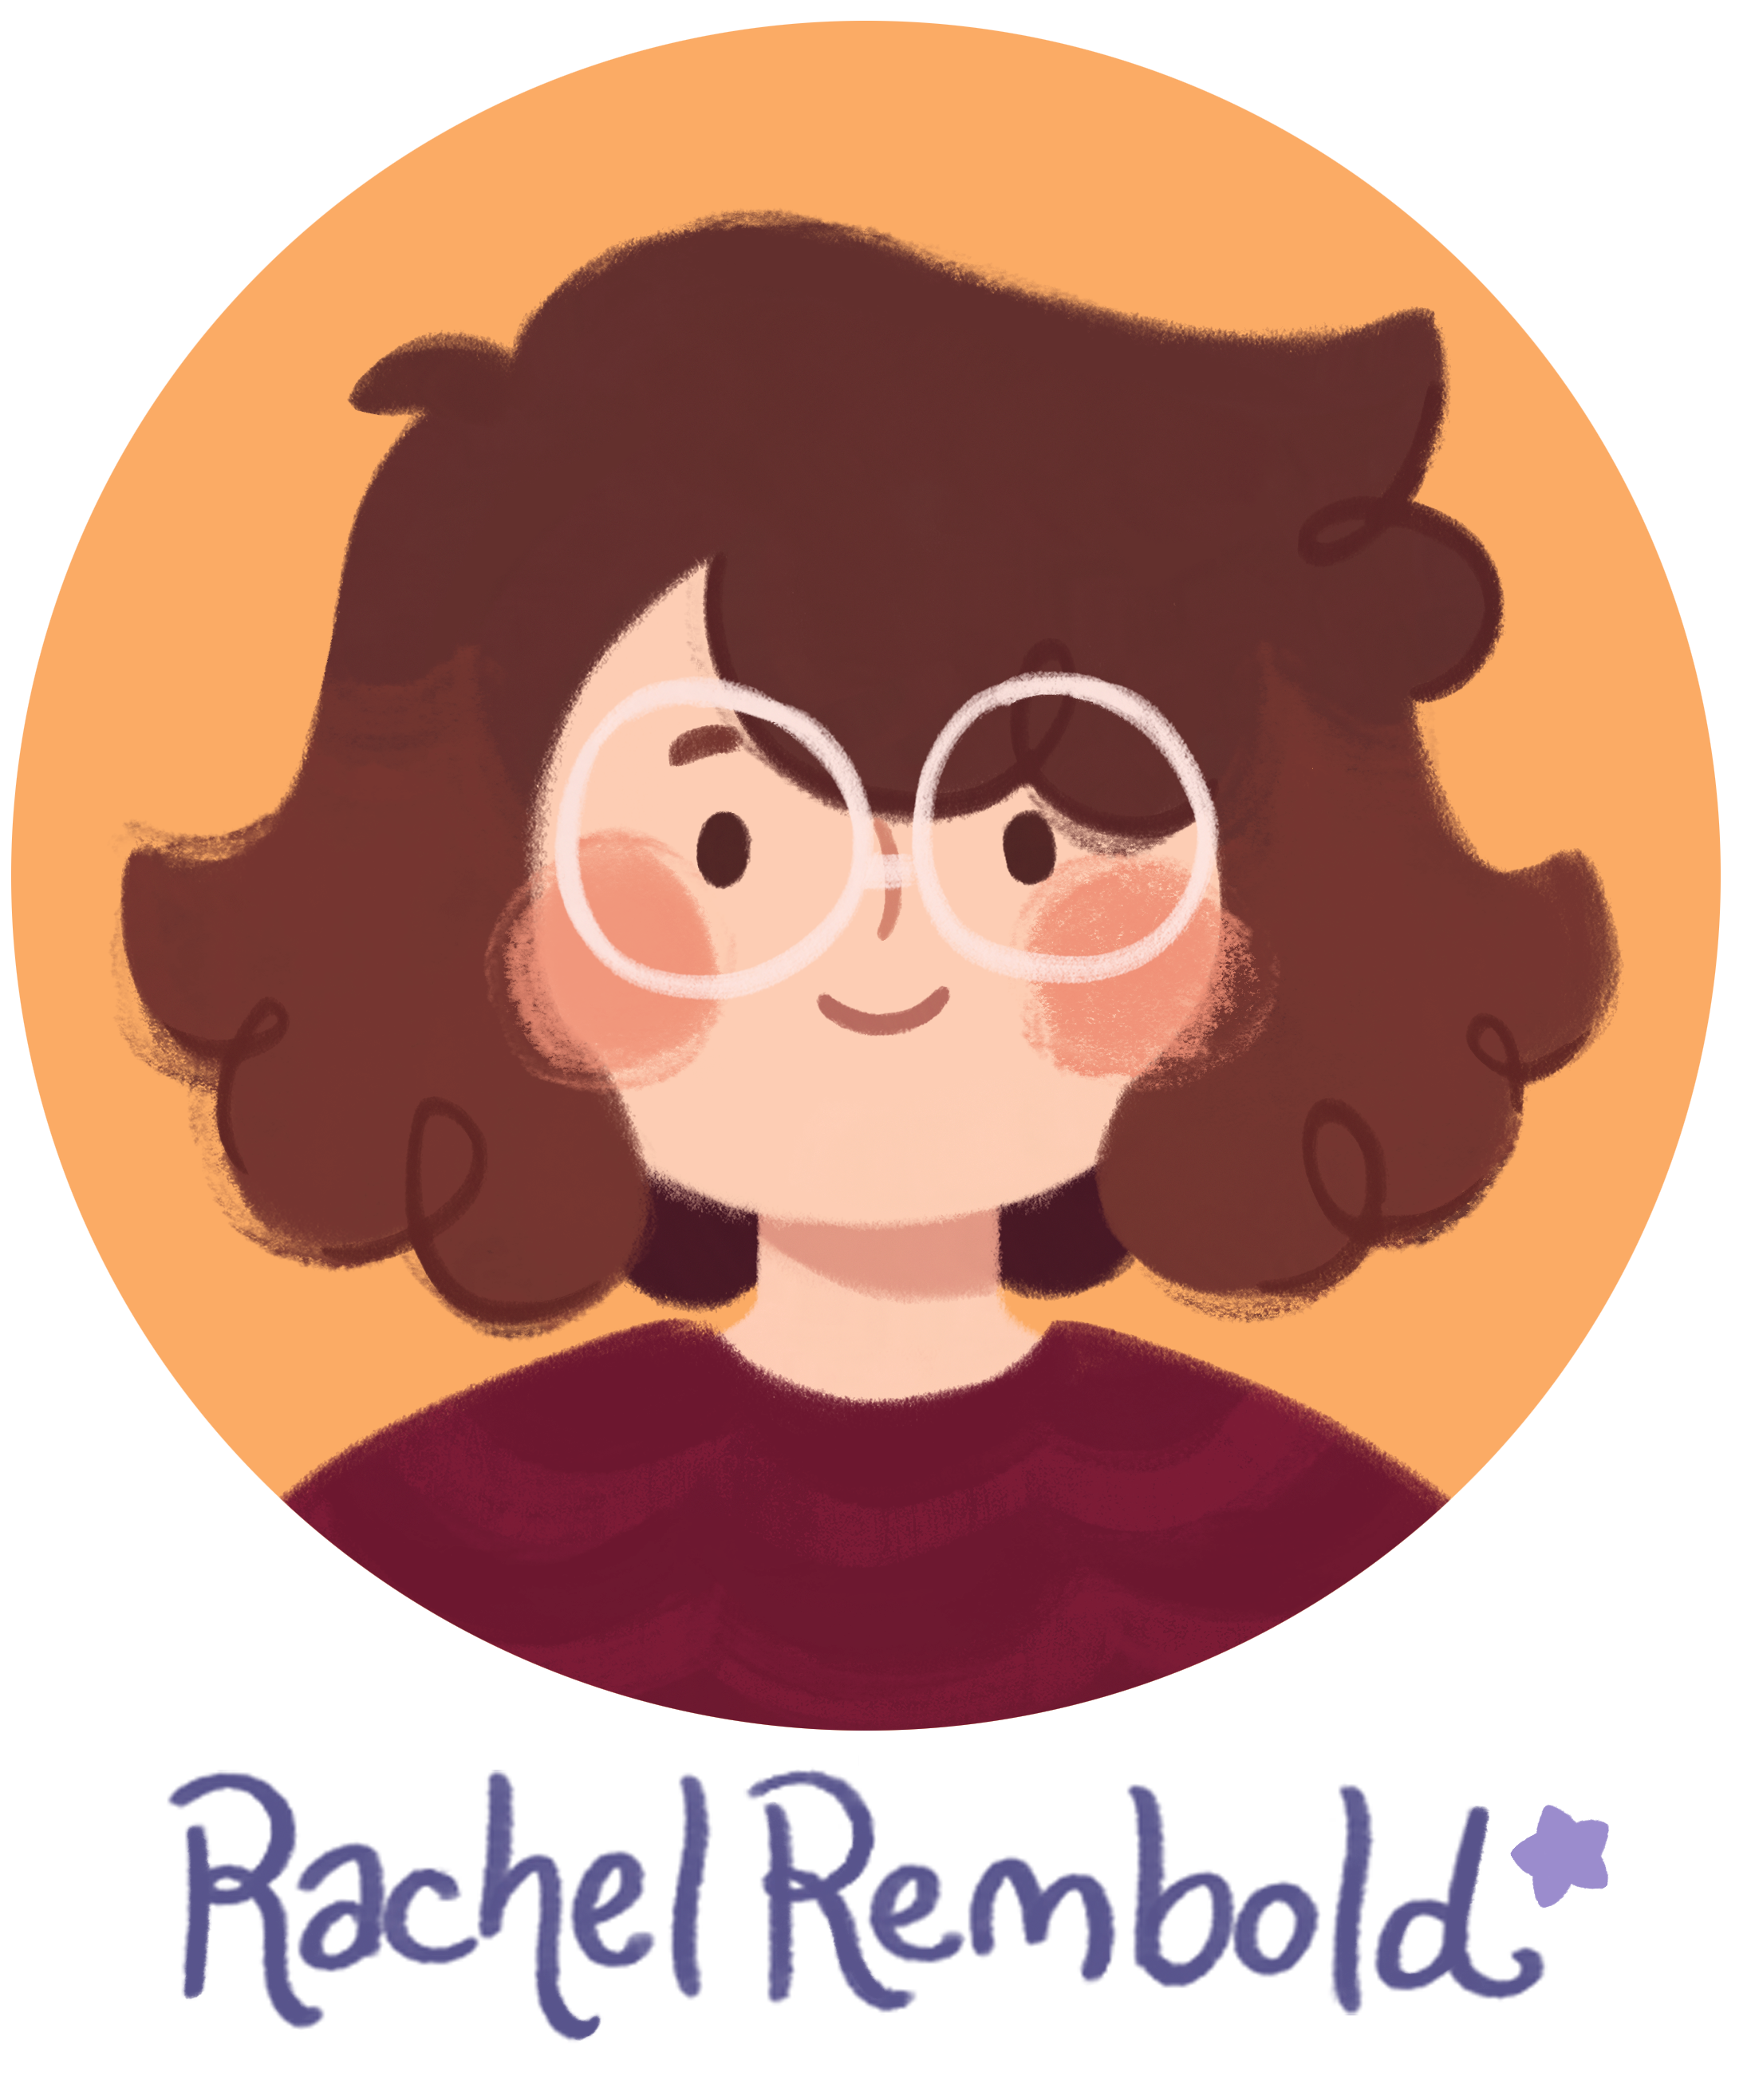 Rachel Rembold